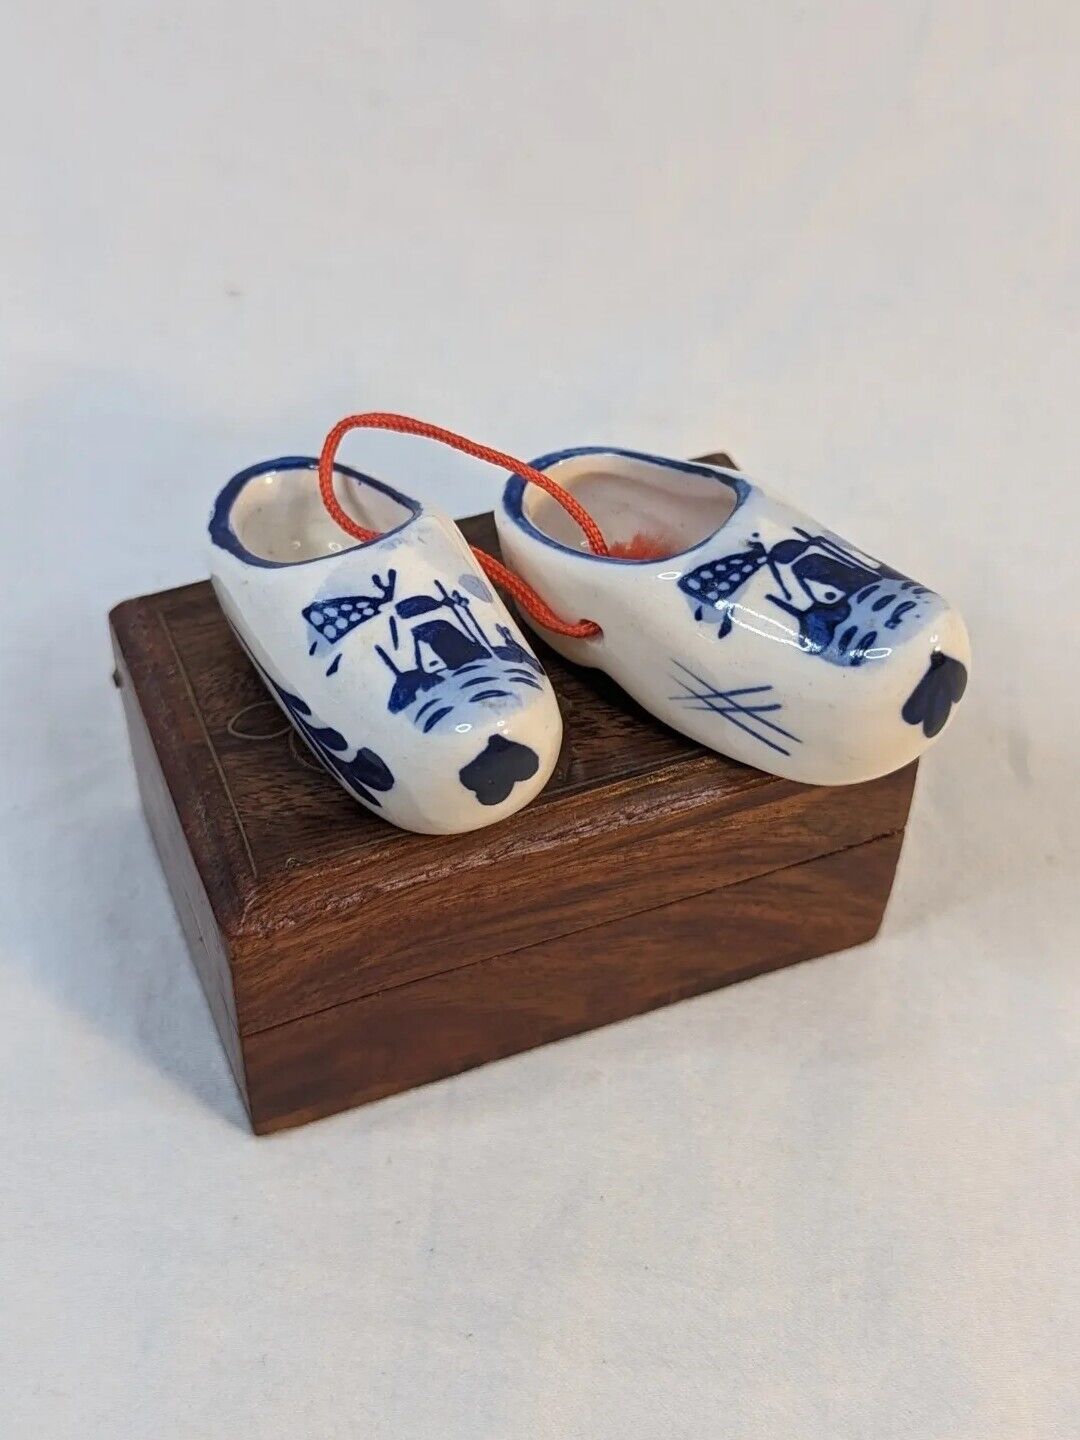 Miniature Porcelain Clogs Delft Blue Vintage Windmill Shoes Collectibles Holland